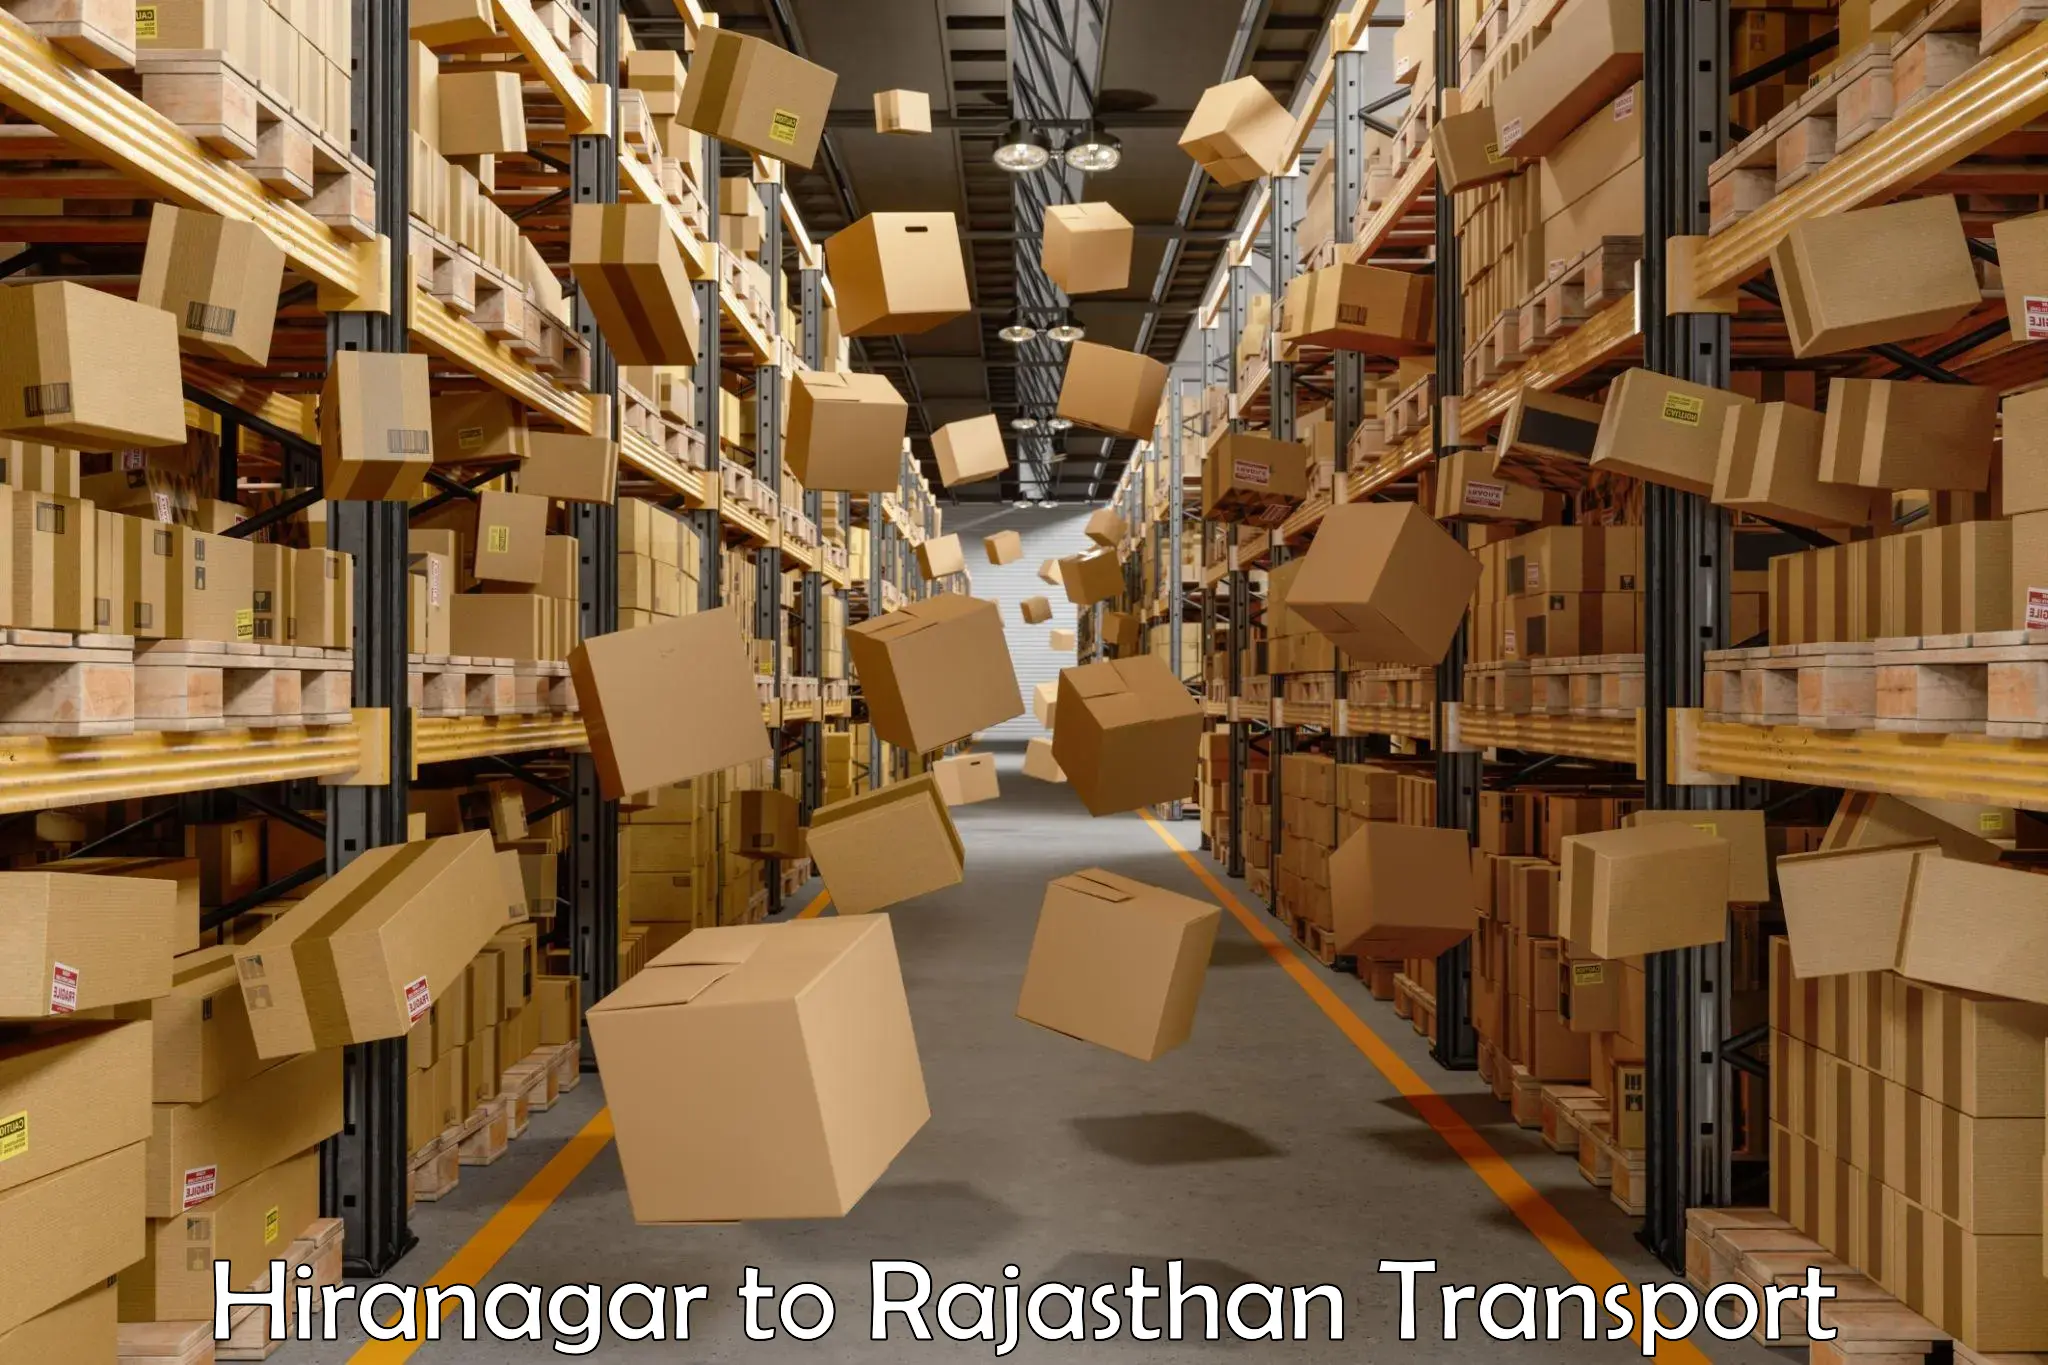 Container transport service Hiranagar to Sri Vijaynagar